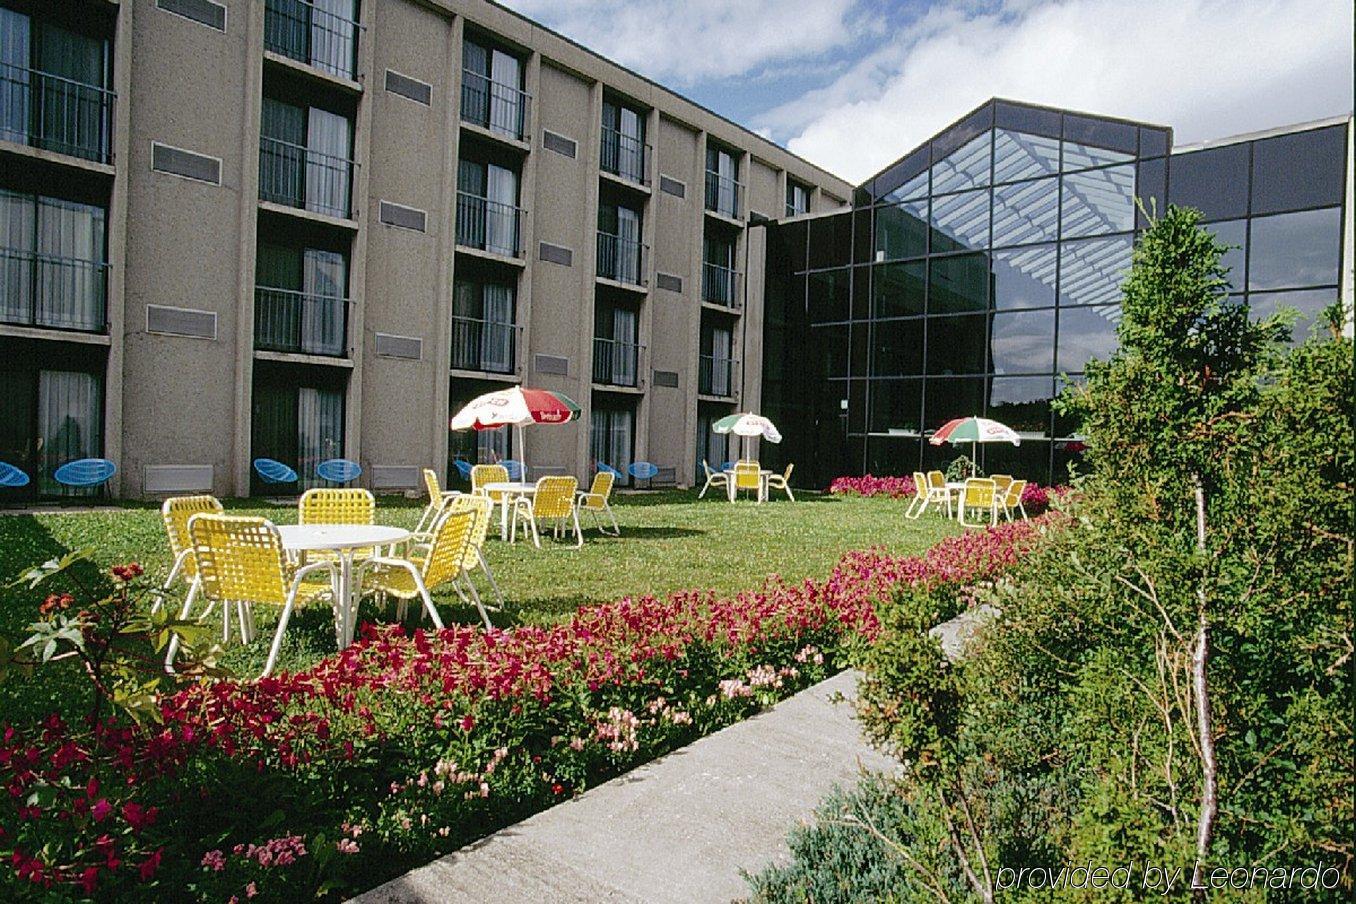 La Sagueneenne - Hotel Et Centre De Congres Saguenay Exterior photo